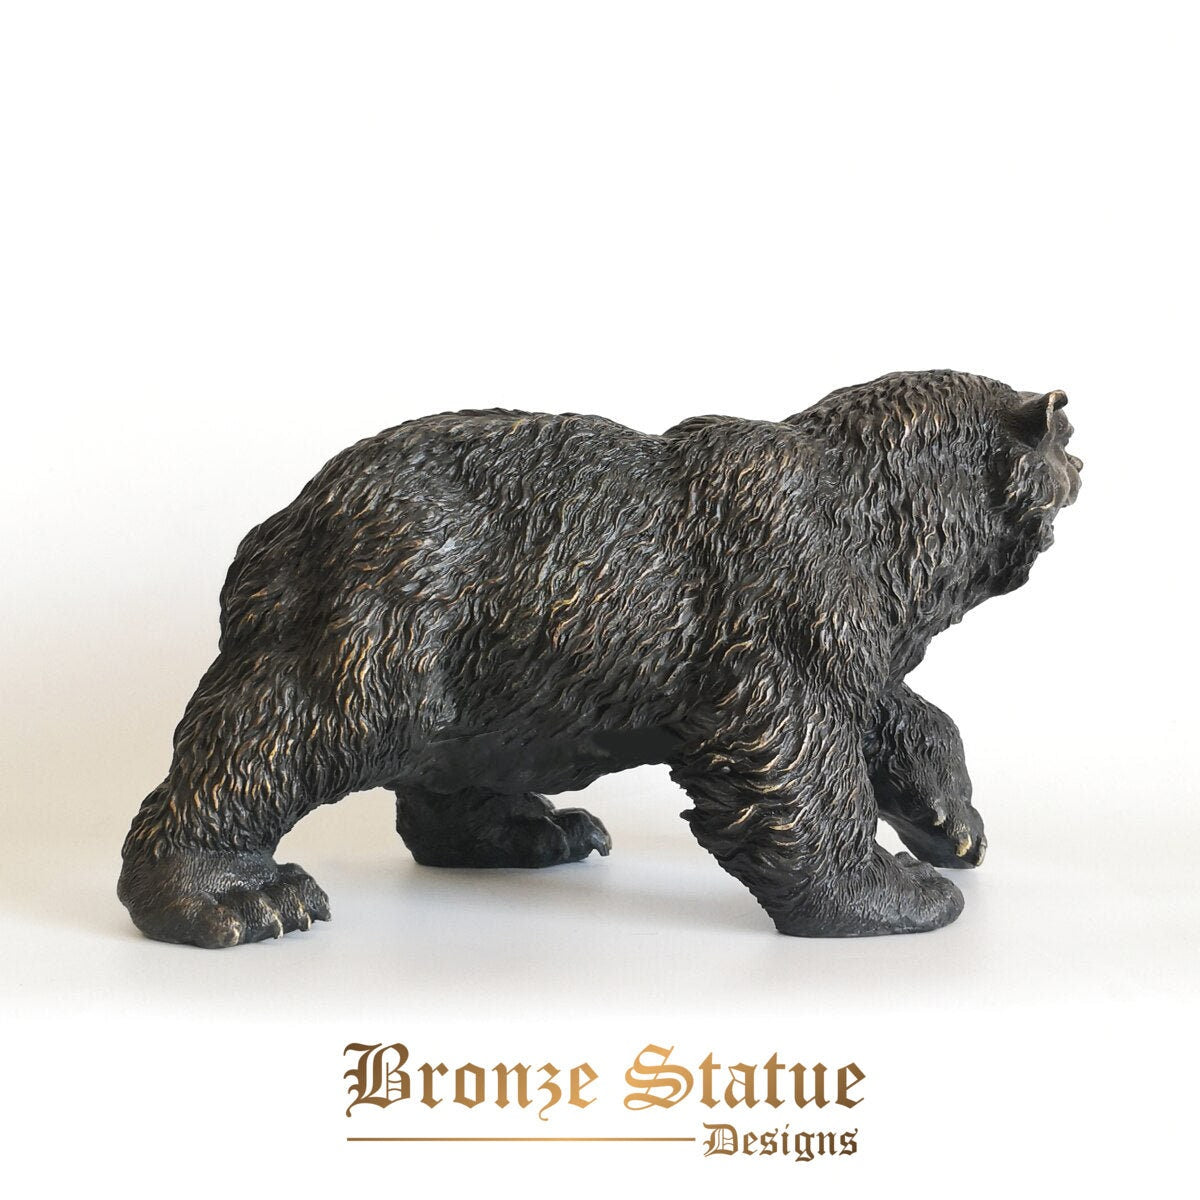 Bear statue sculpture bronze european wildlife animal figurine vintage brass artwork home desktop garden decor